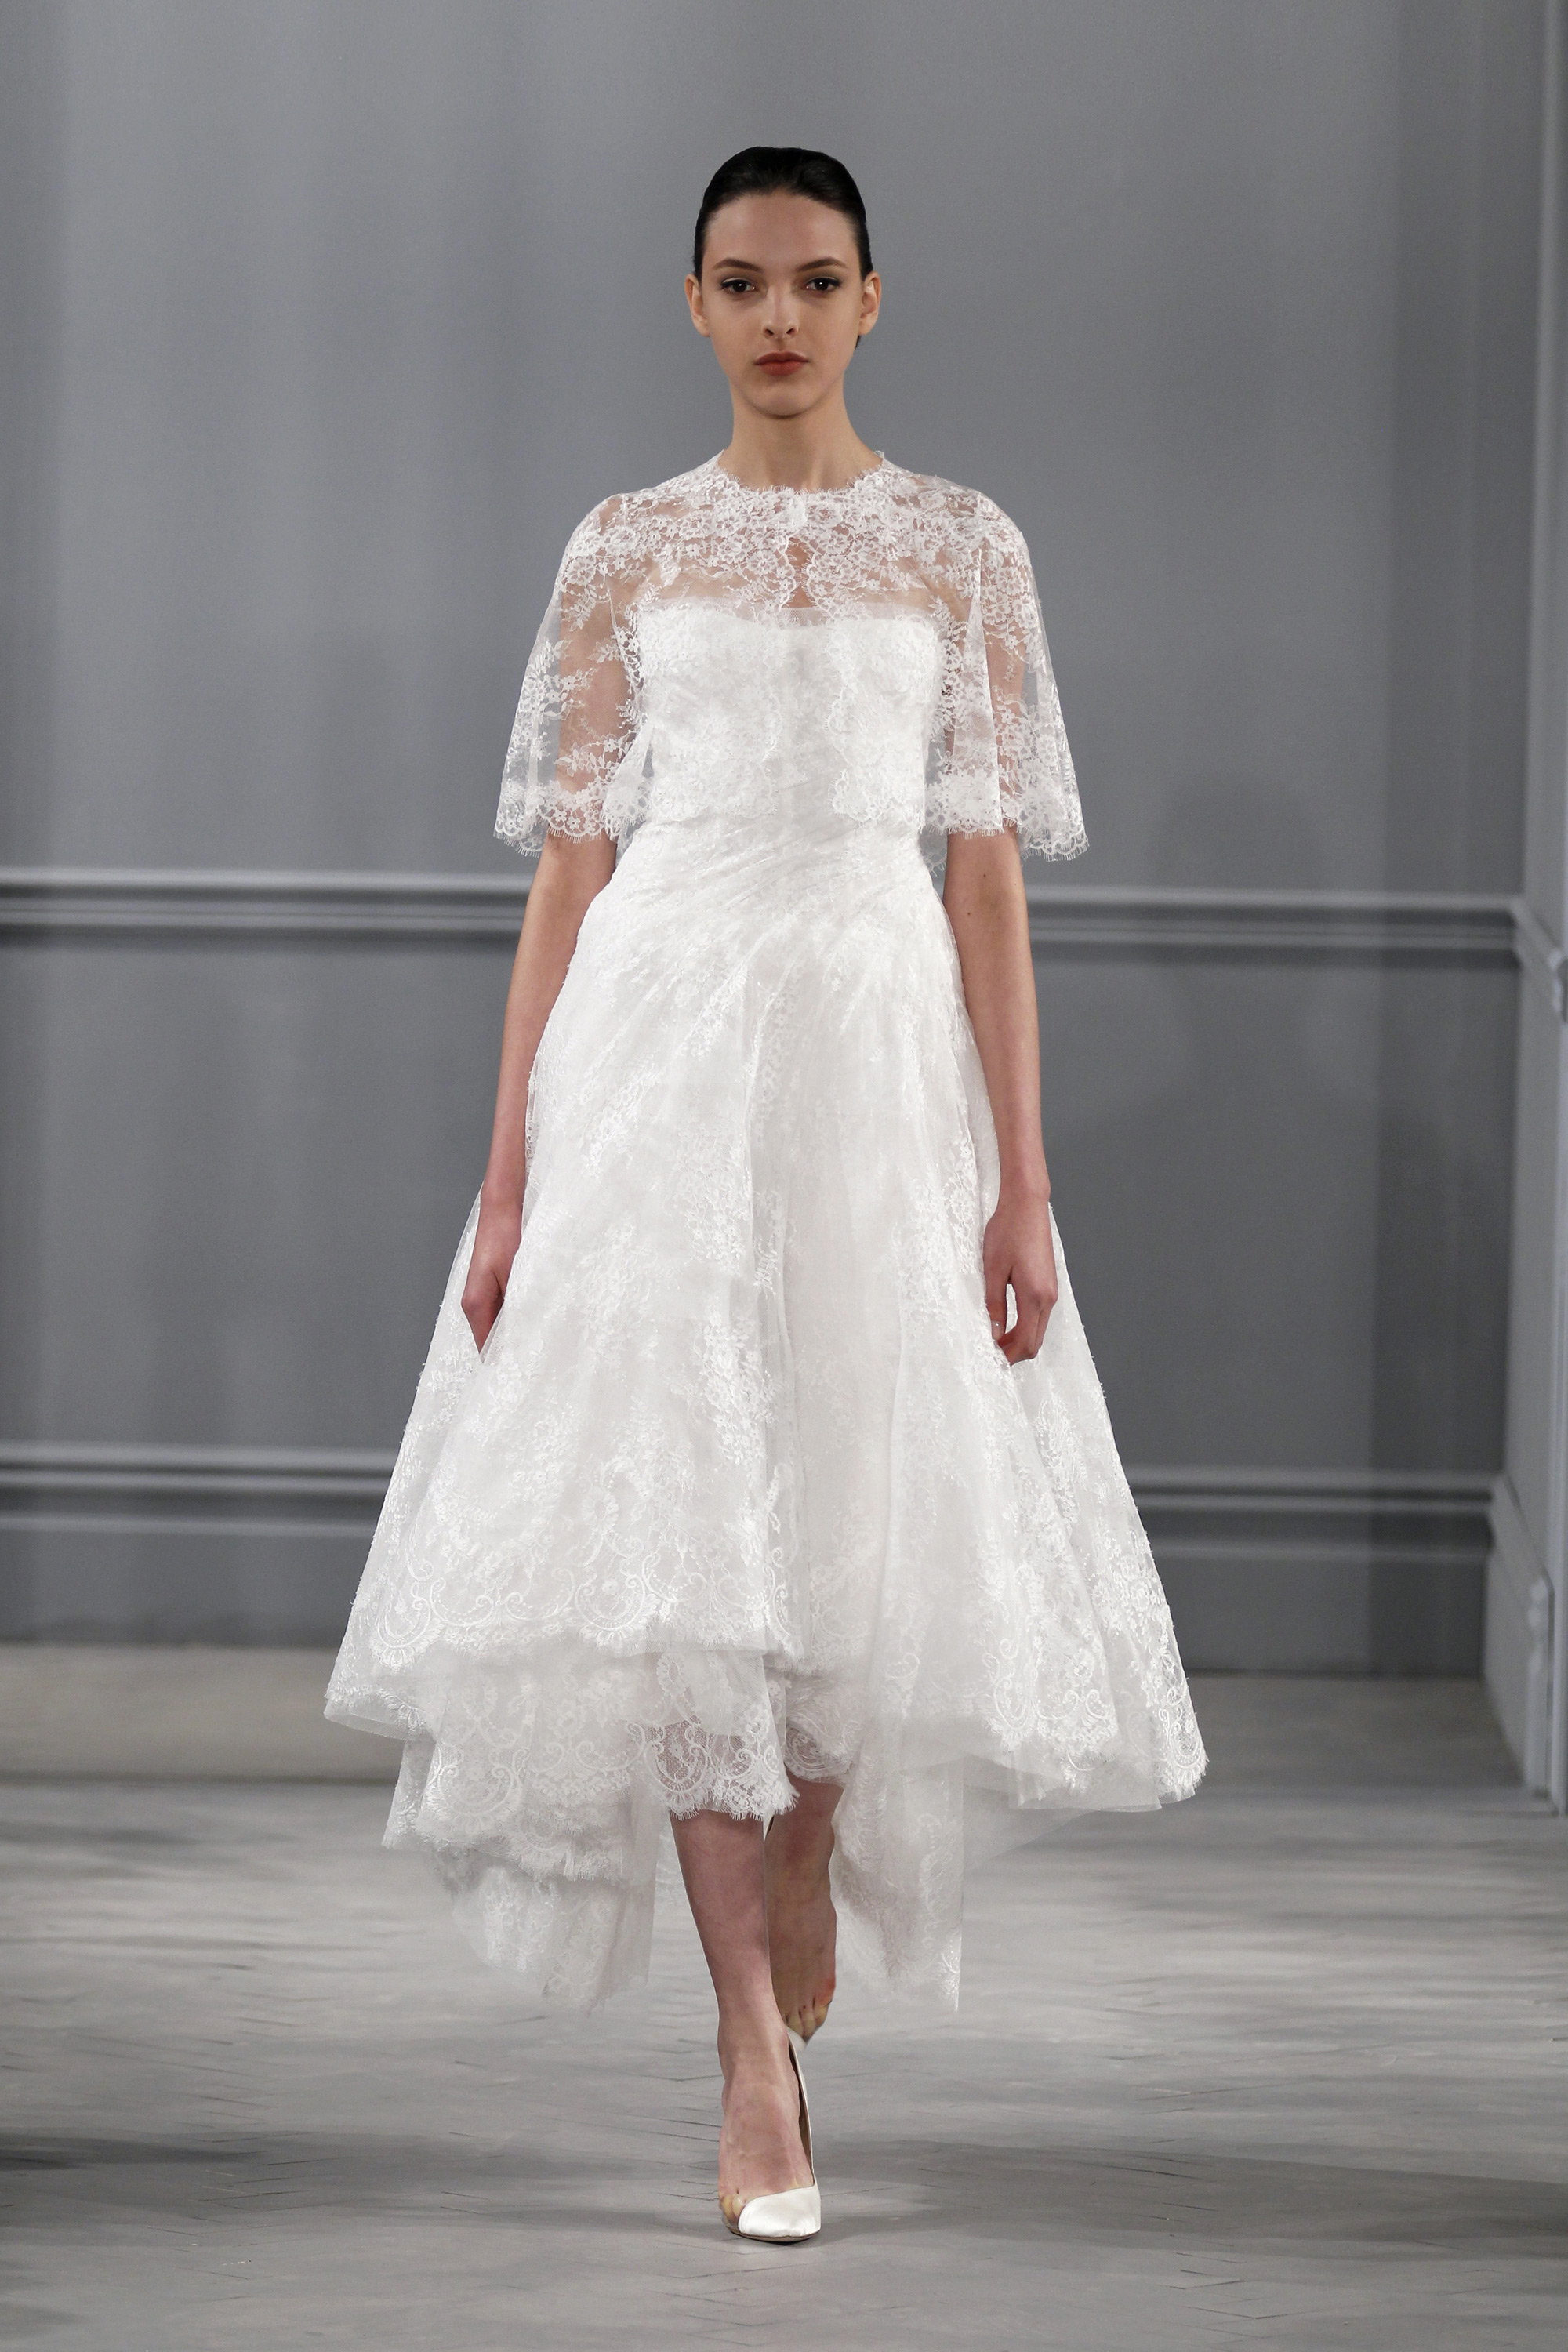 Capes - Monique Lhuillier Spring 2014 Wedding Dress